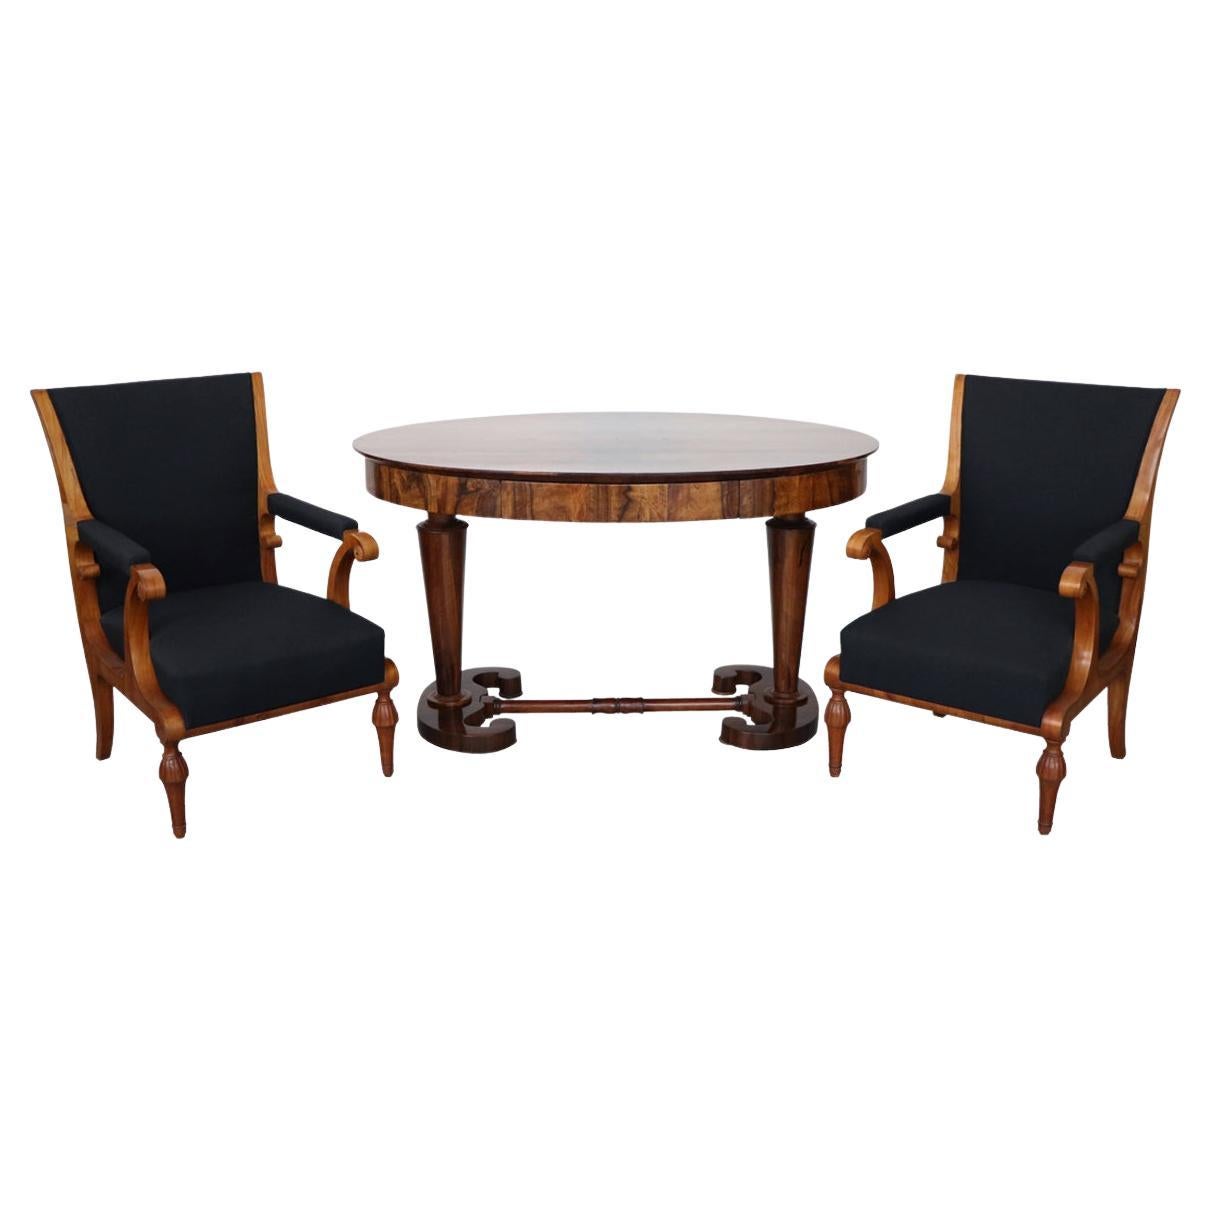 Ensemble de deux fauteuils et d'une table Biedermeier du XIXe siècle. Vienne, vers 1825.